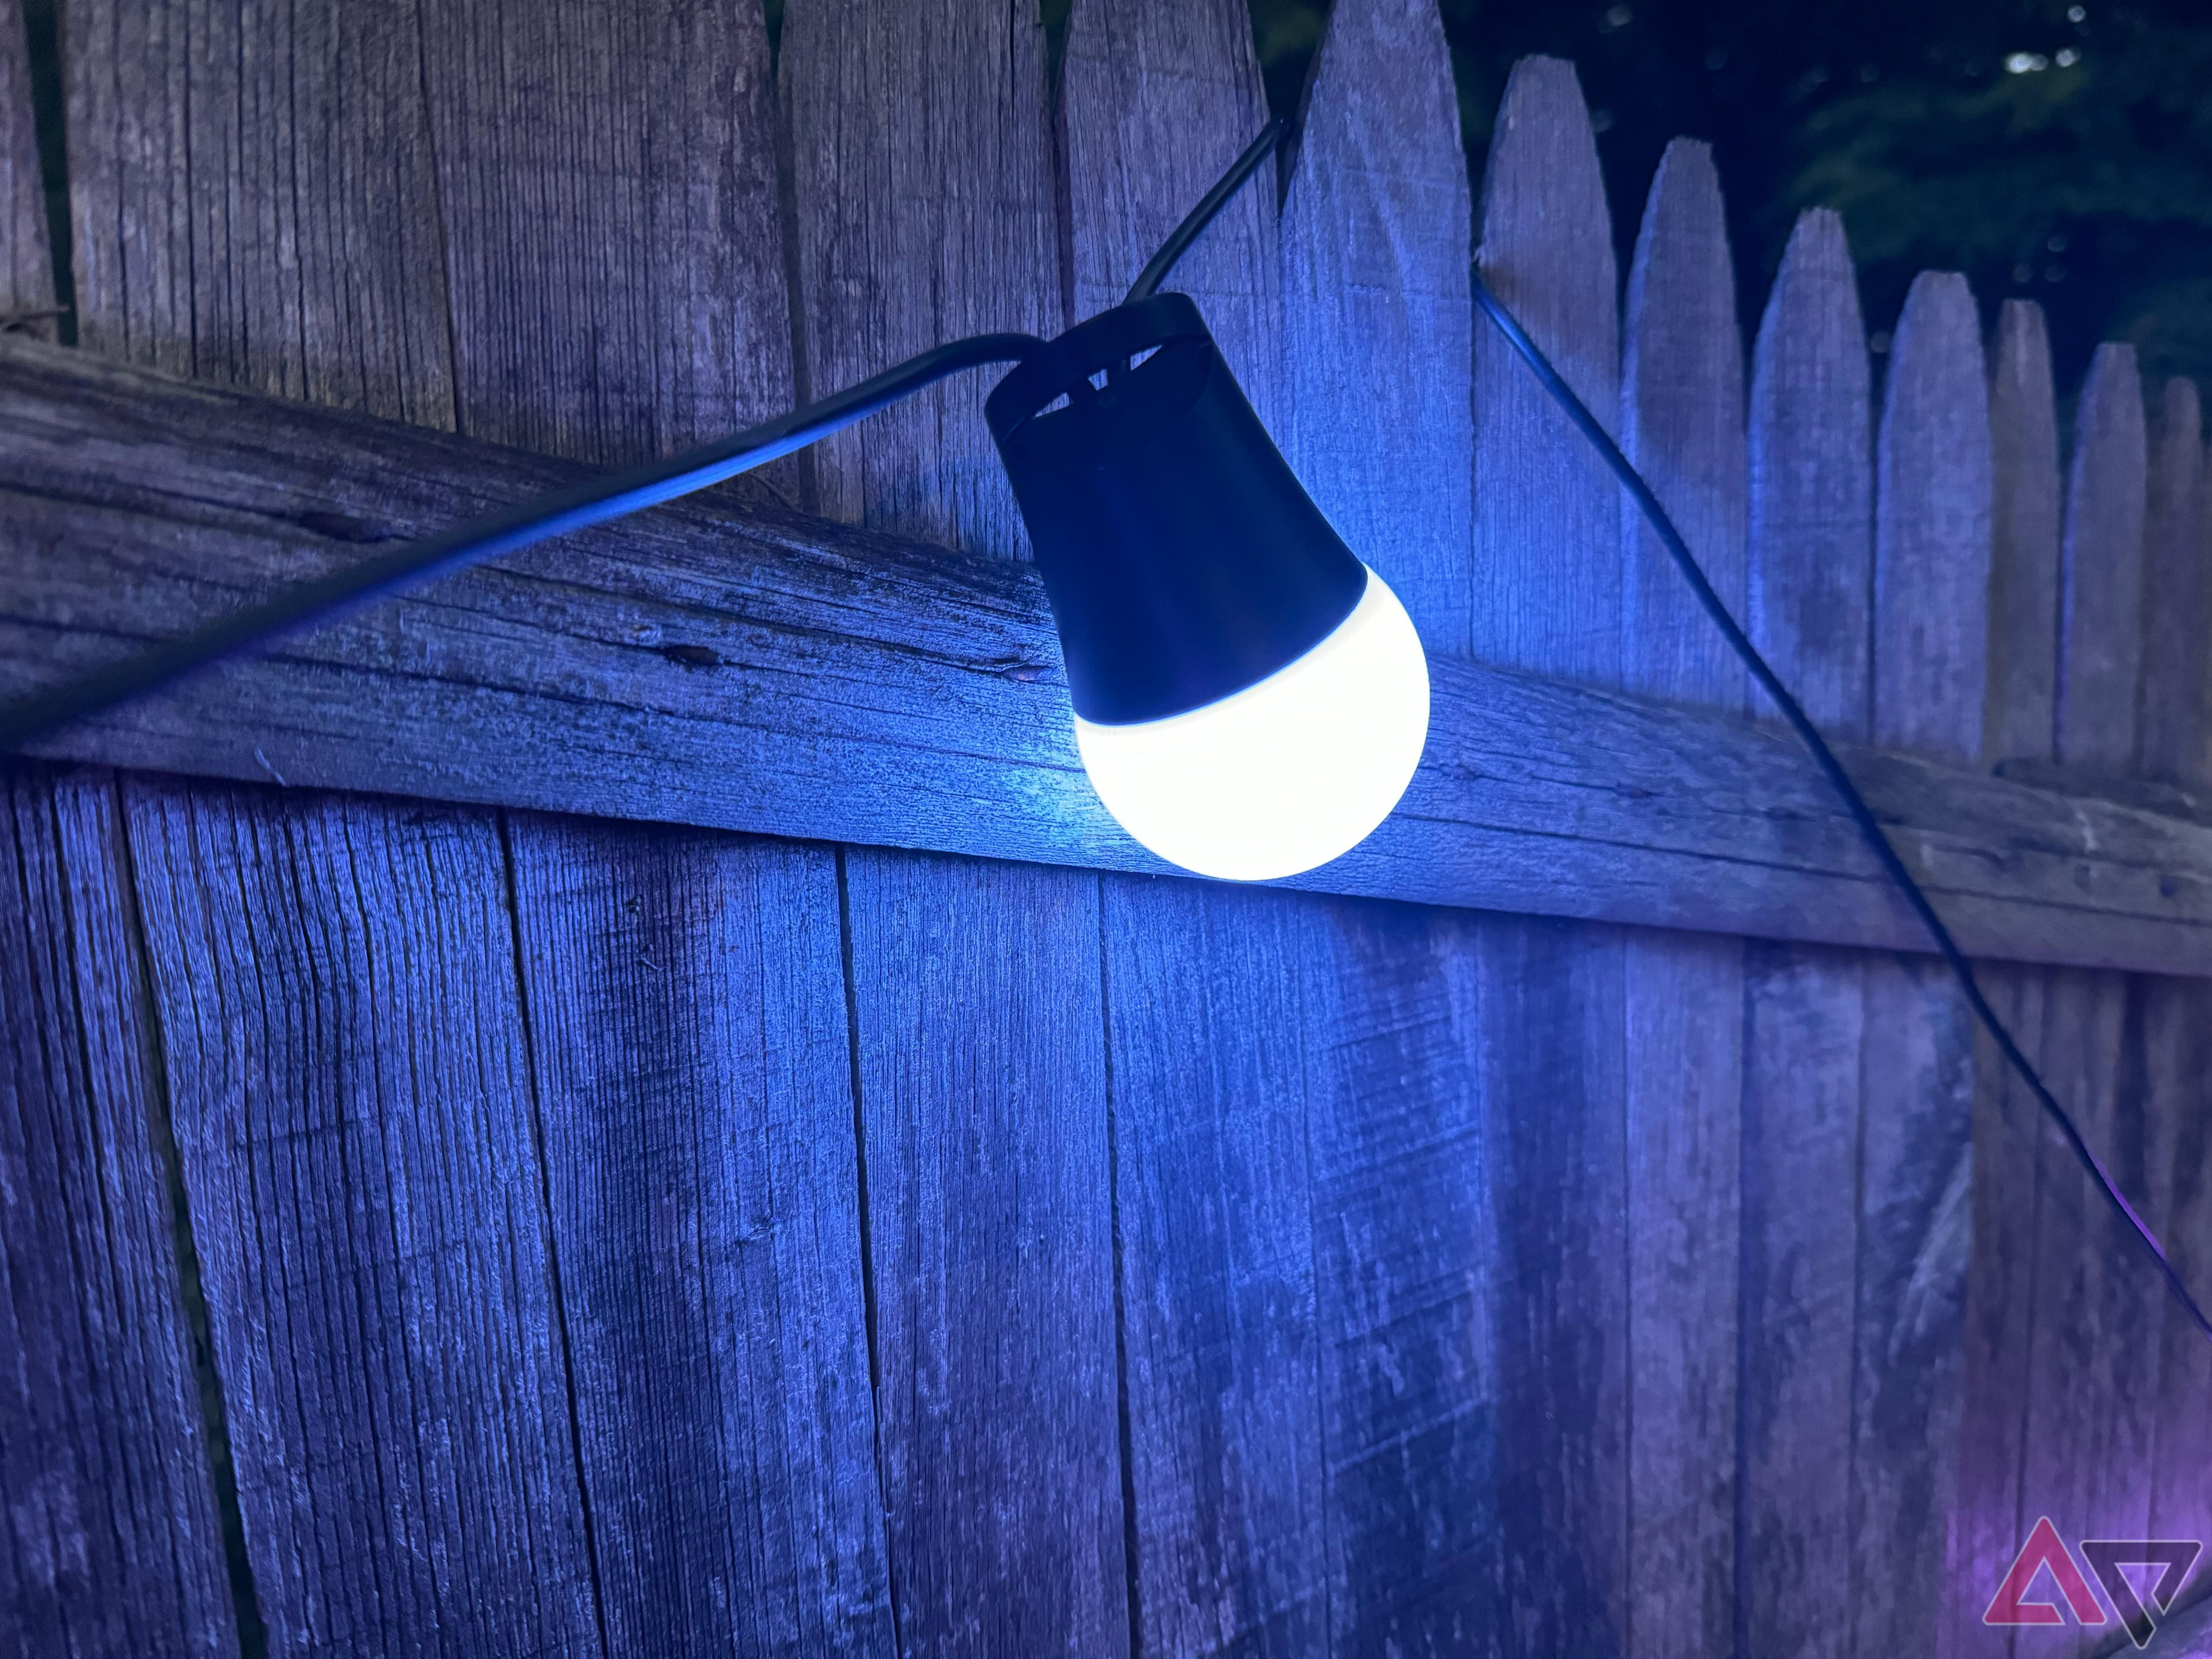 Govee Outdoor String Lights 2 iluminado em azul à noite